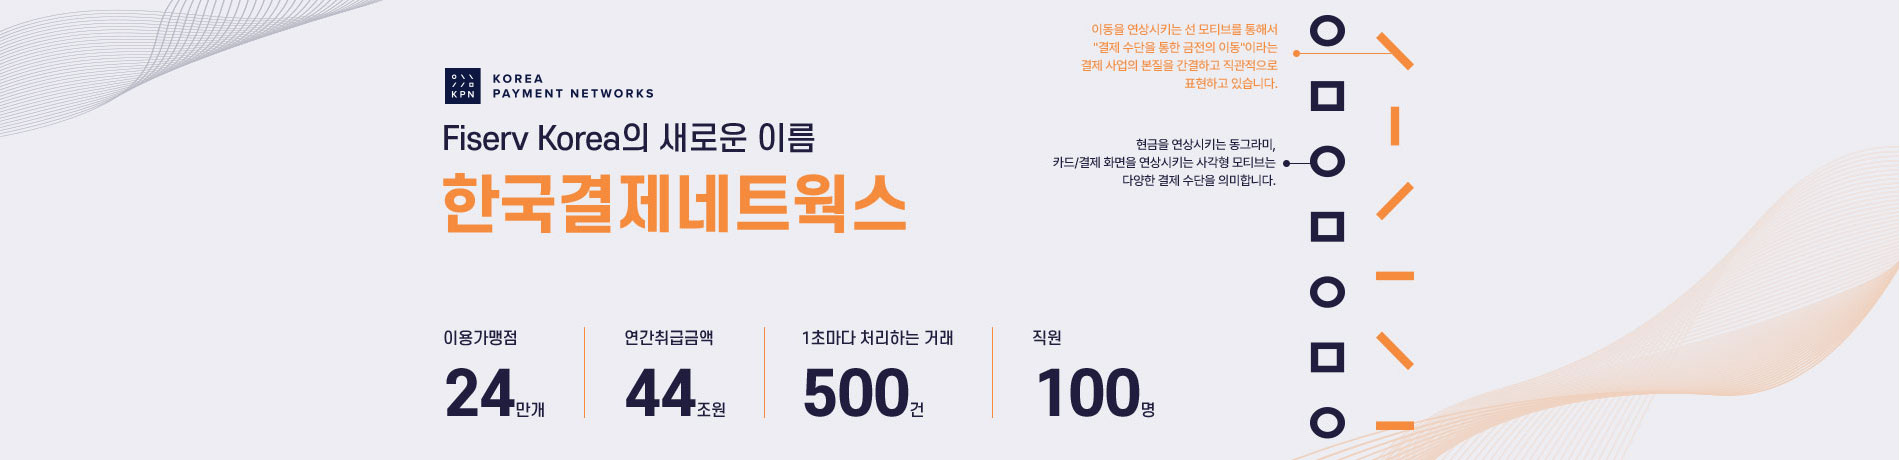 Fiserv Korea의 새로운 이름 한국결제네트웍스